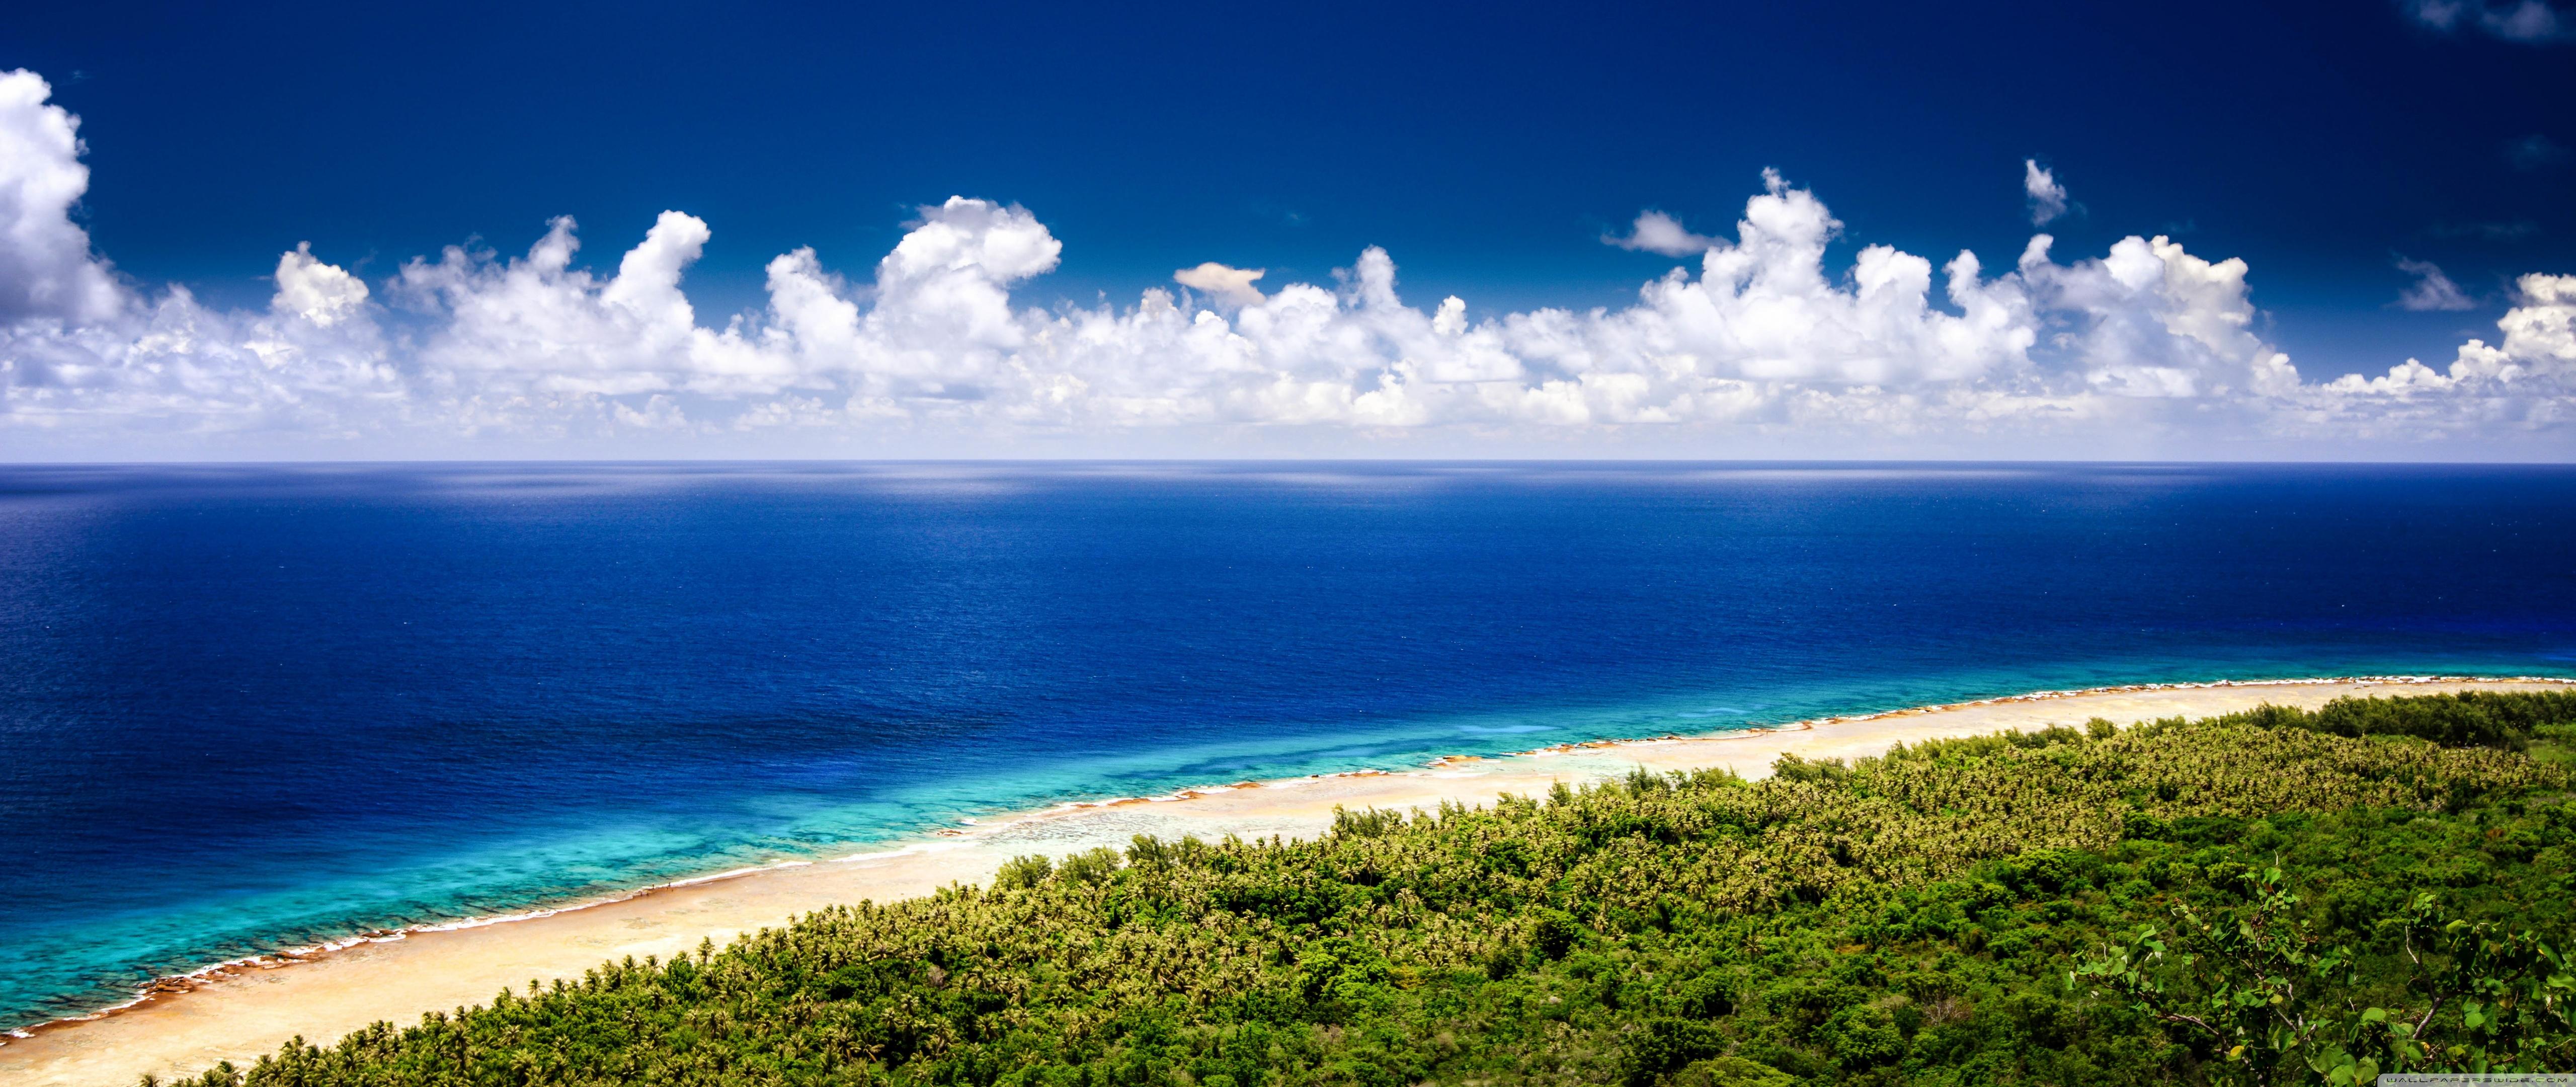 Guam Beaches ❤ 4K HD Desktop Wallpaper for 4K Ultra HD TV • Wide